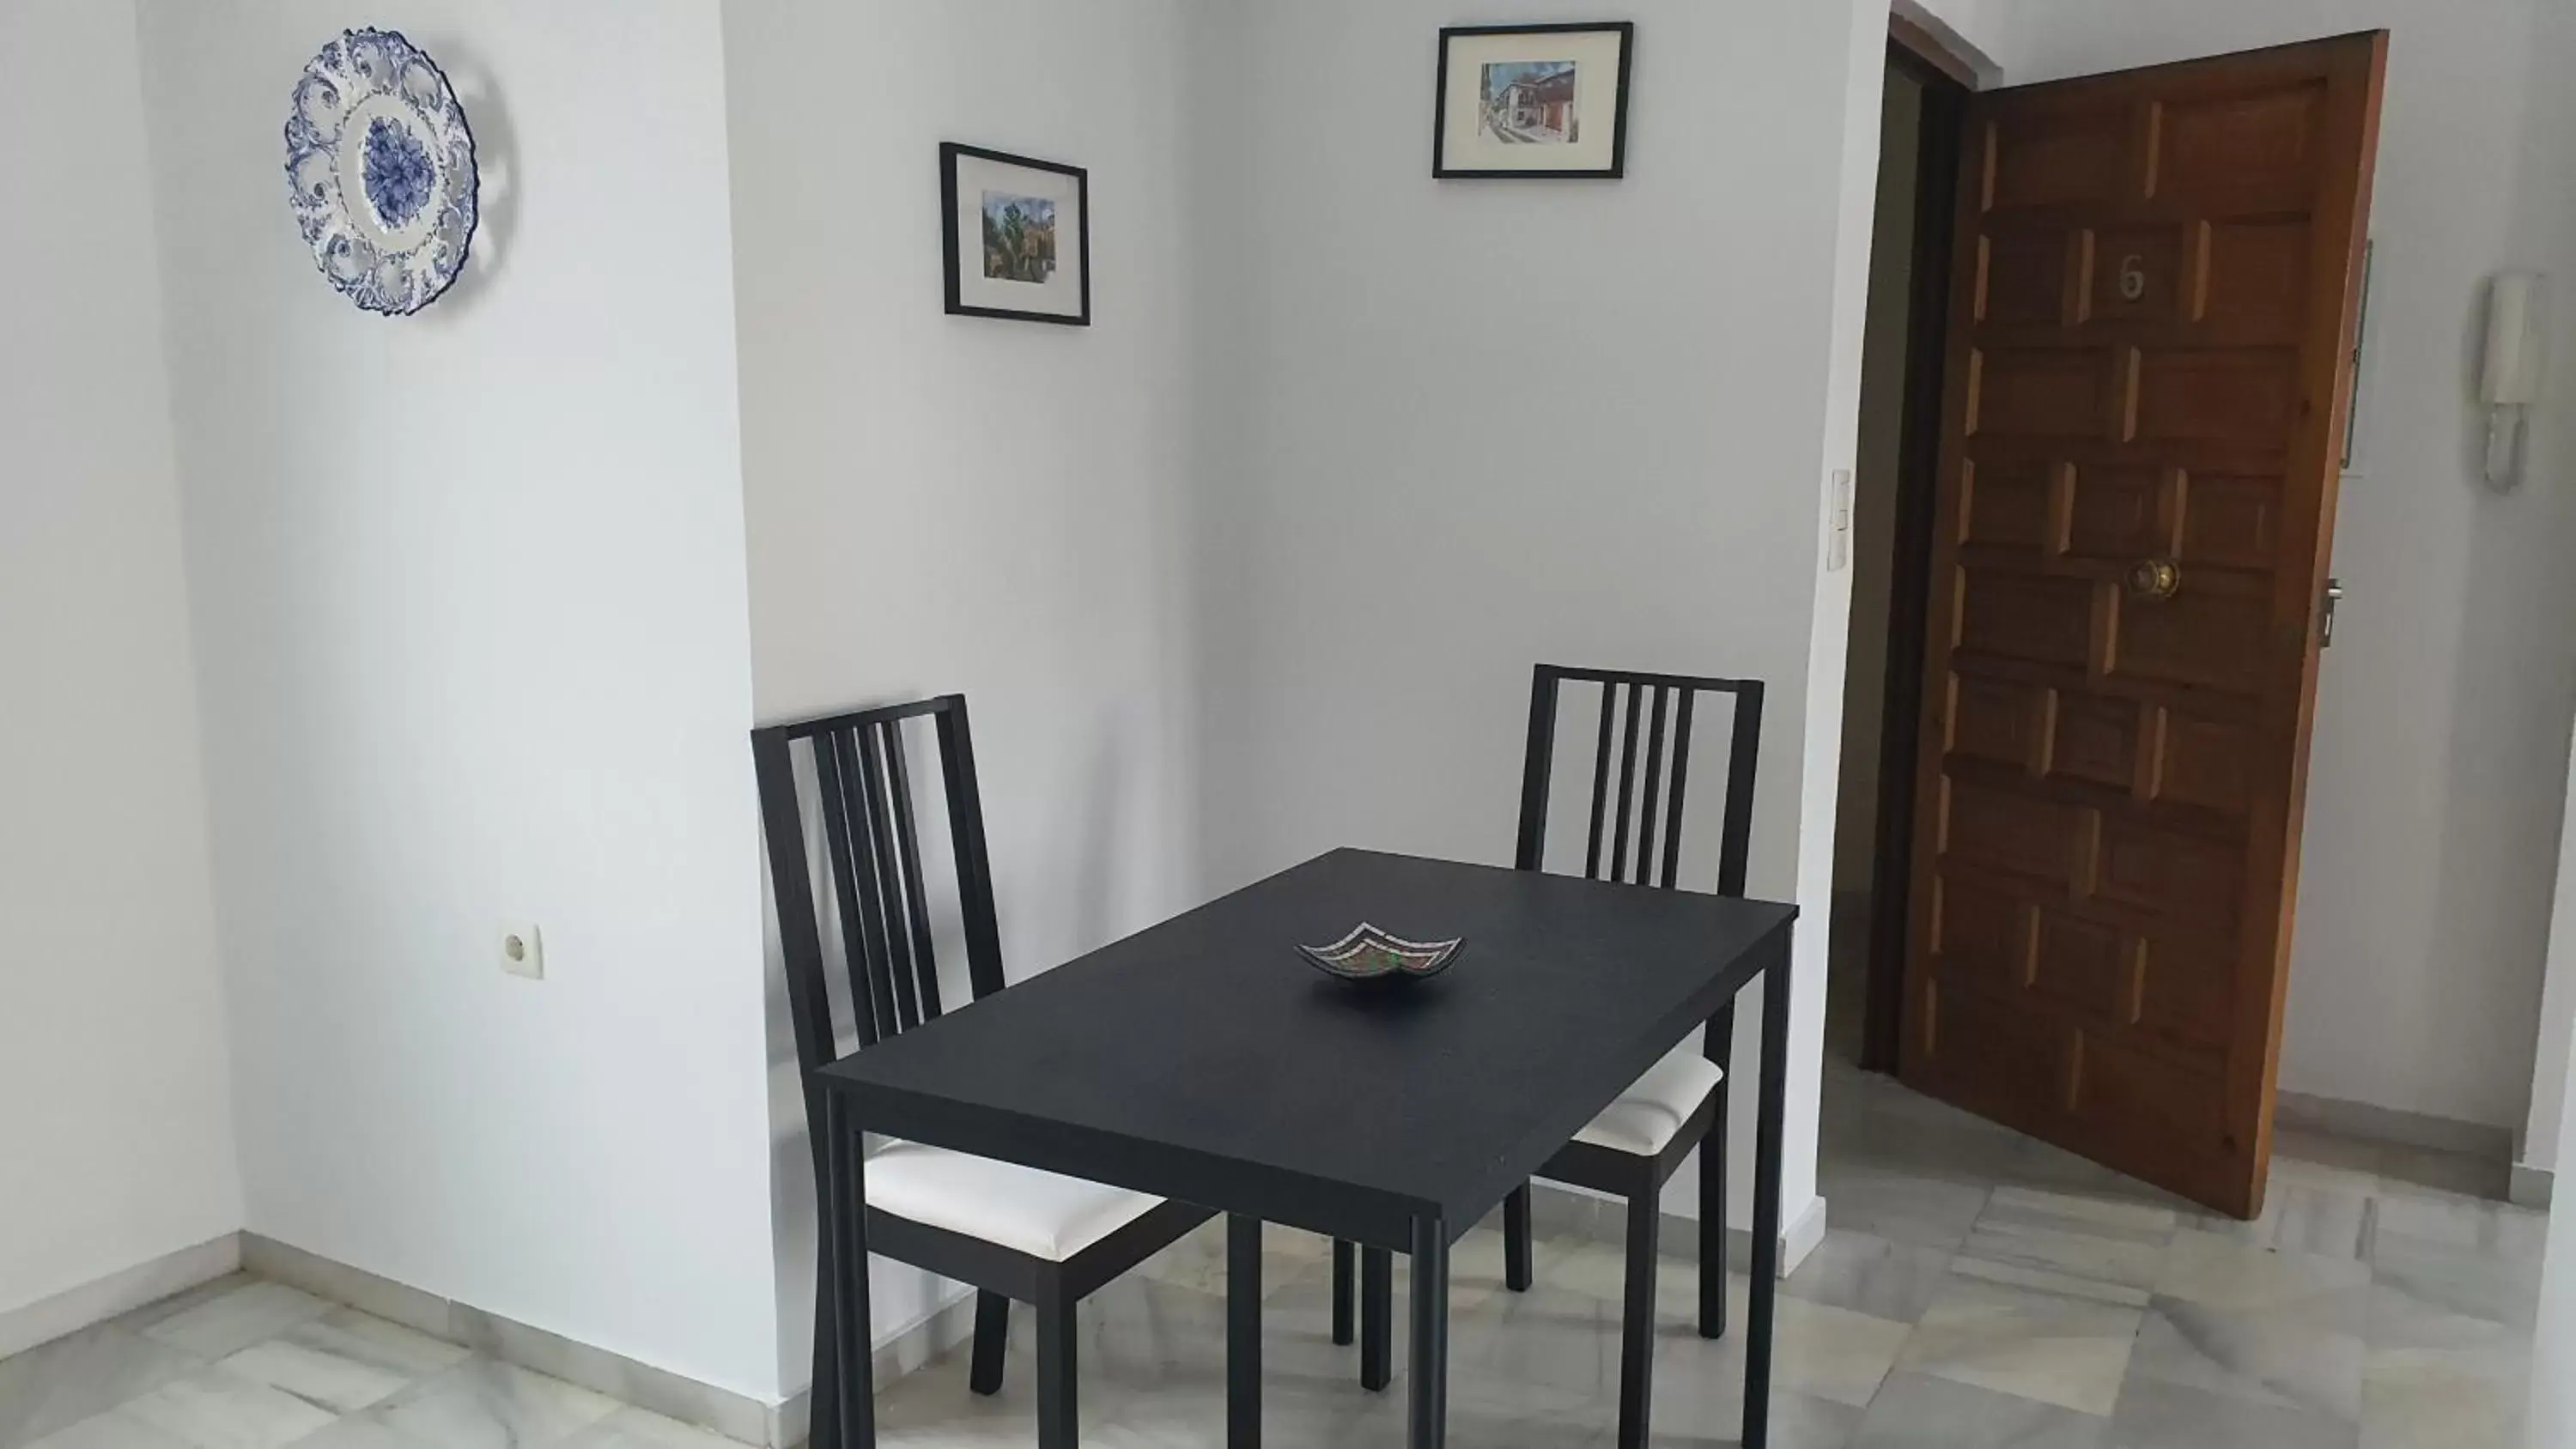 Living room, Dining Area in CASA MORENA MiA APARTAMENTOS